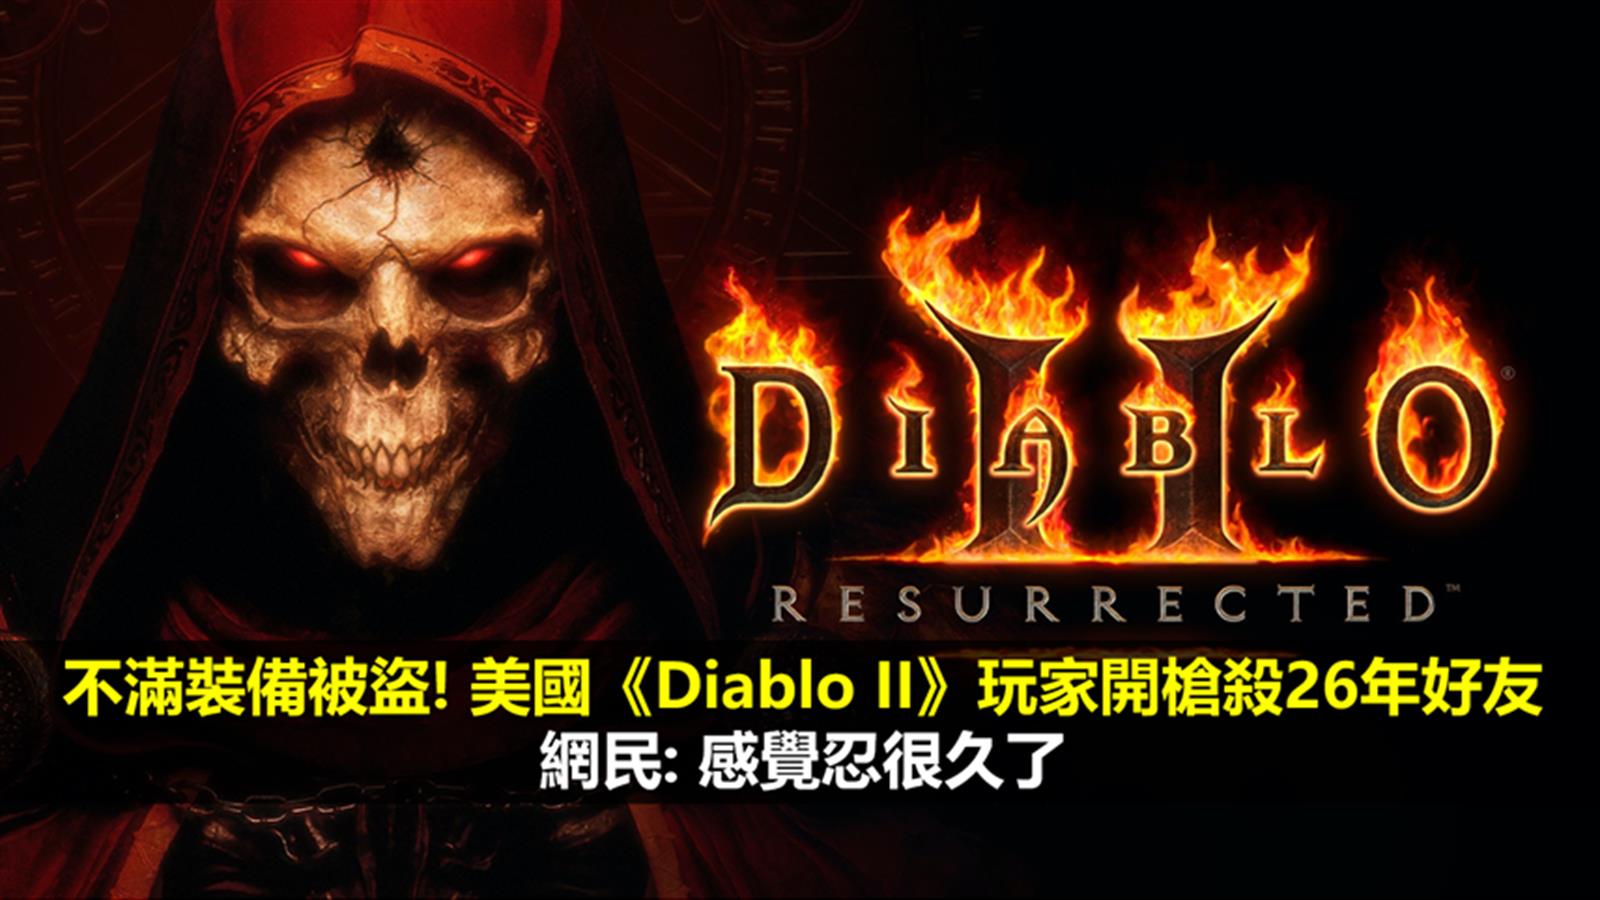 不滿裝備被盜! 美國《Diablo II》玩家開槍殺26年好友  網民: 感覺忍很久了